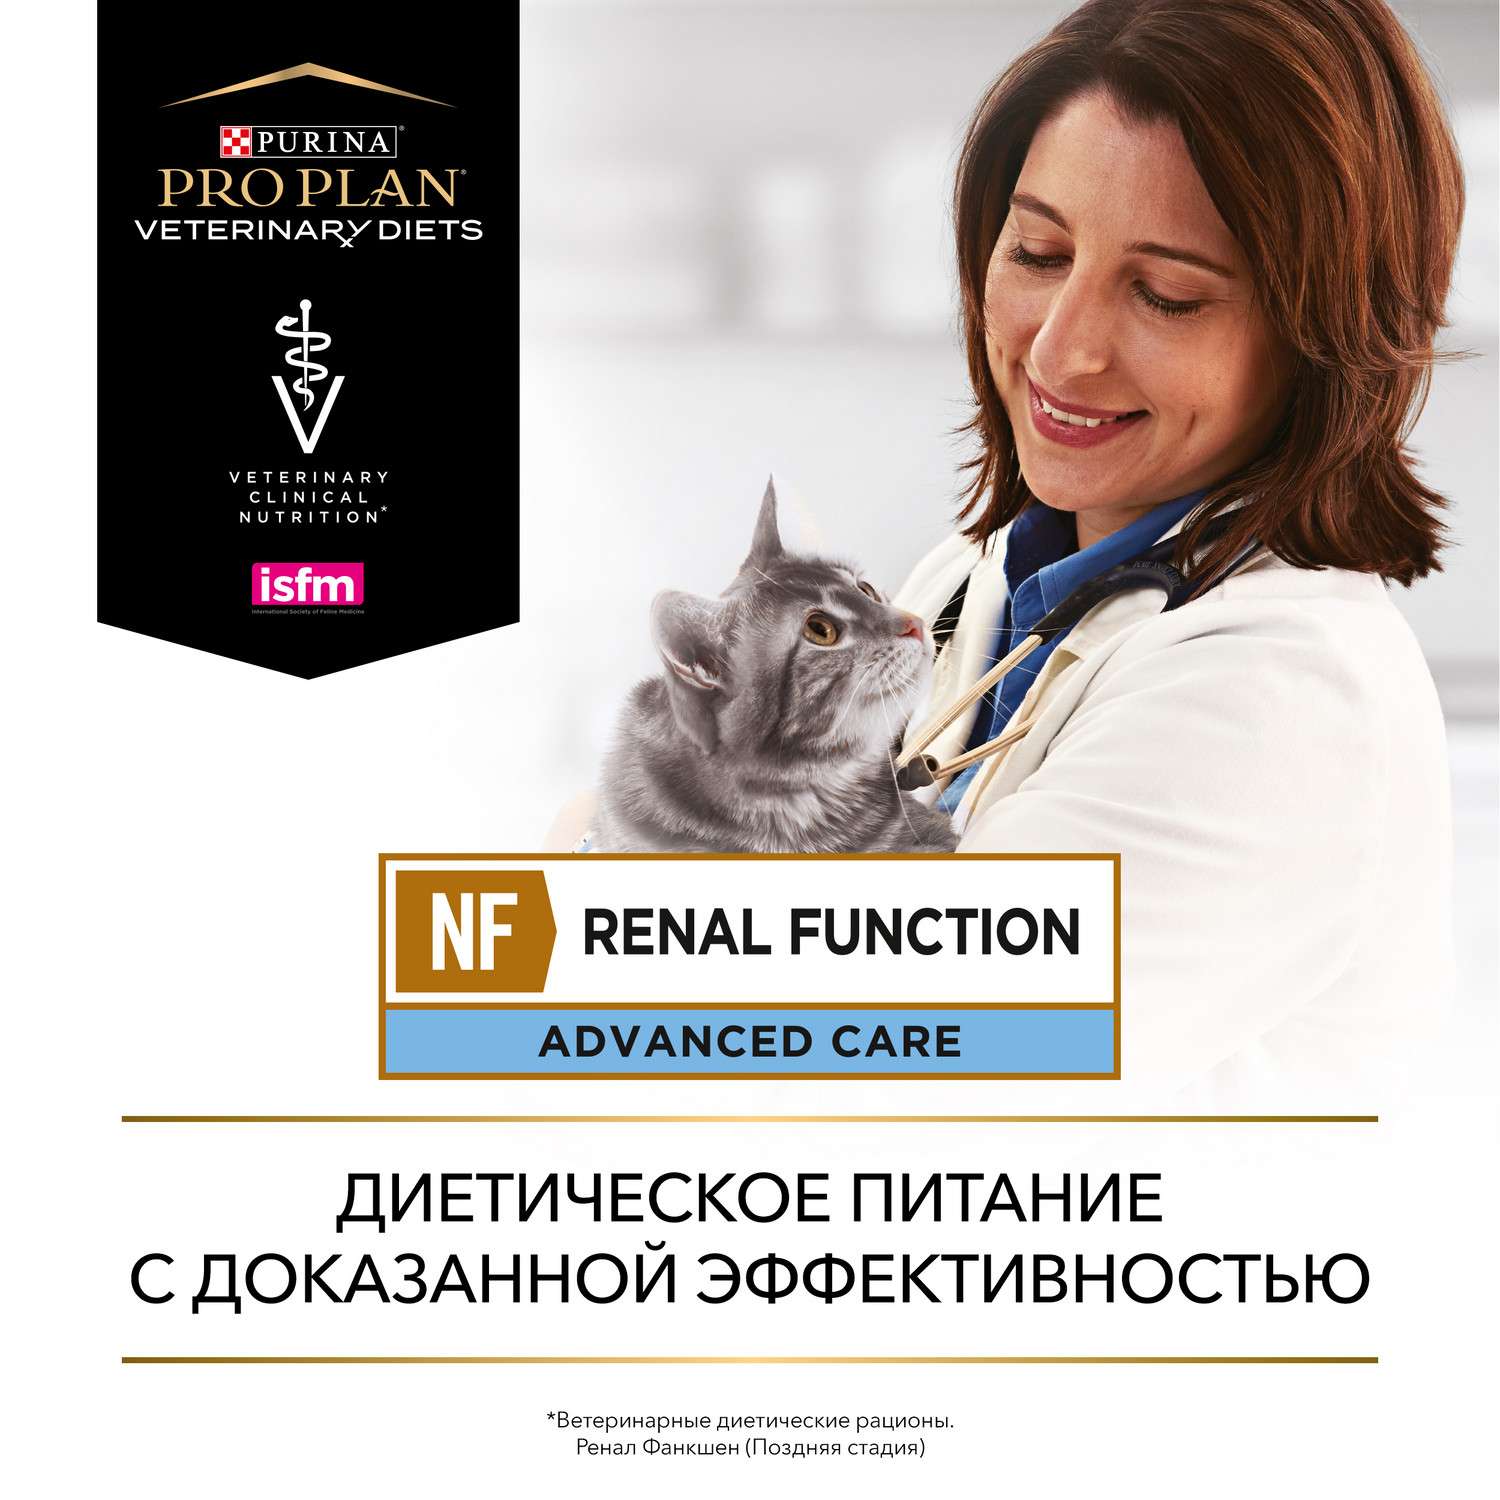 Корм для кошек Purina Pro Plan Veterinary diet 350г NF при патологии почек поздняя стадия - фото 13